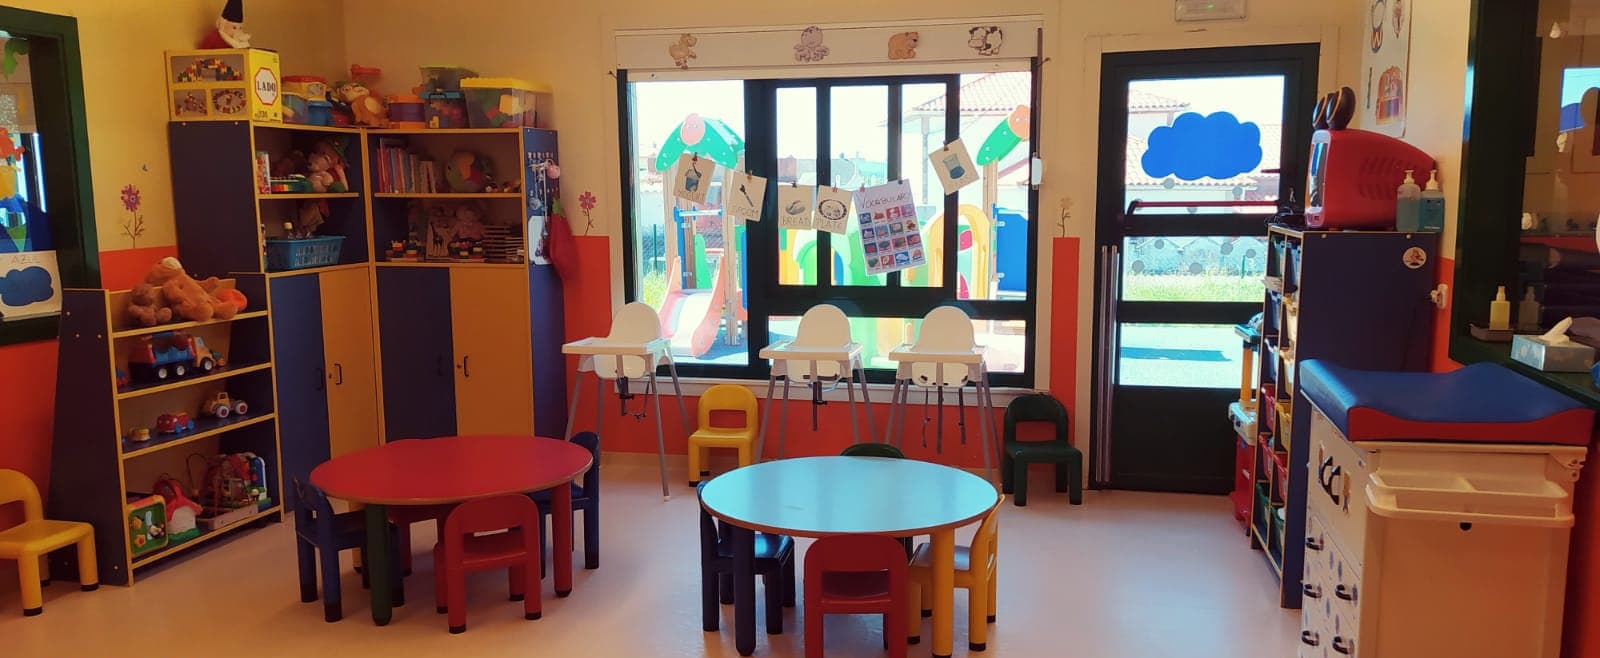 Escuela Infantil Municipal de Bergondo - Galería